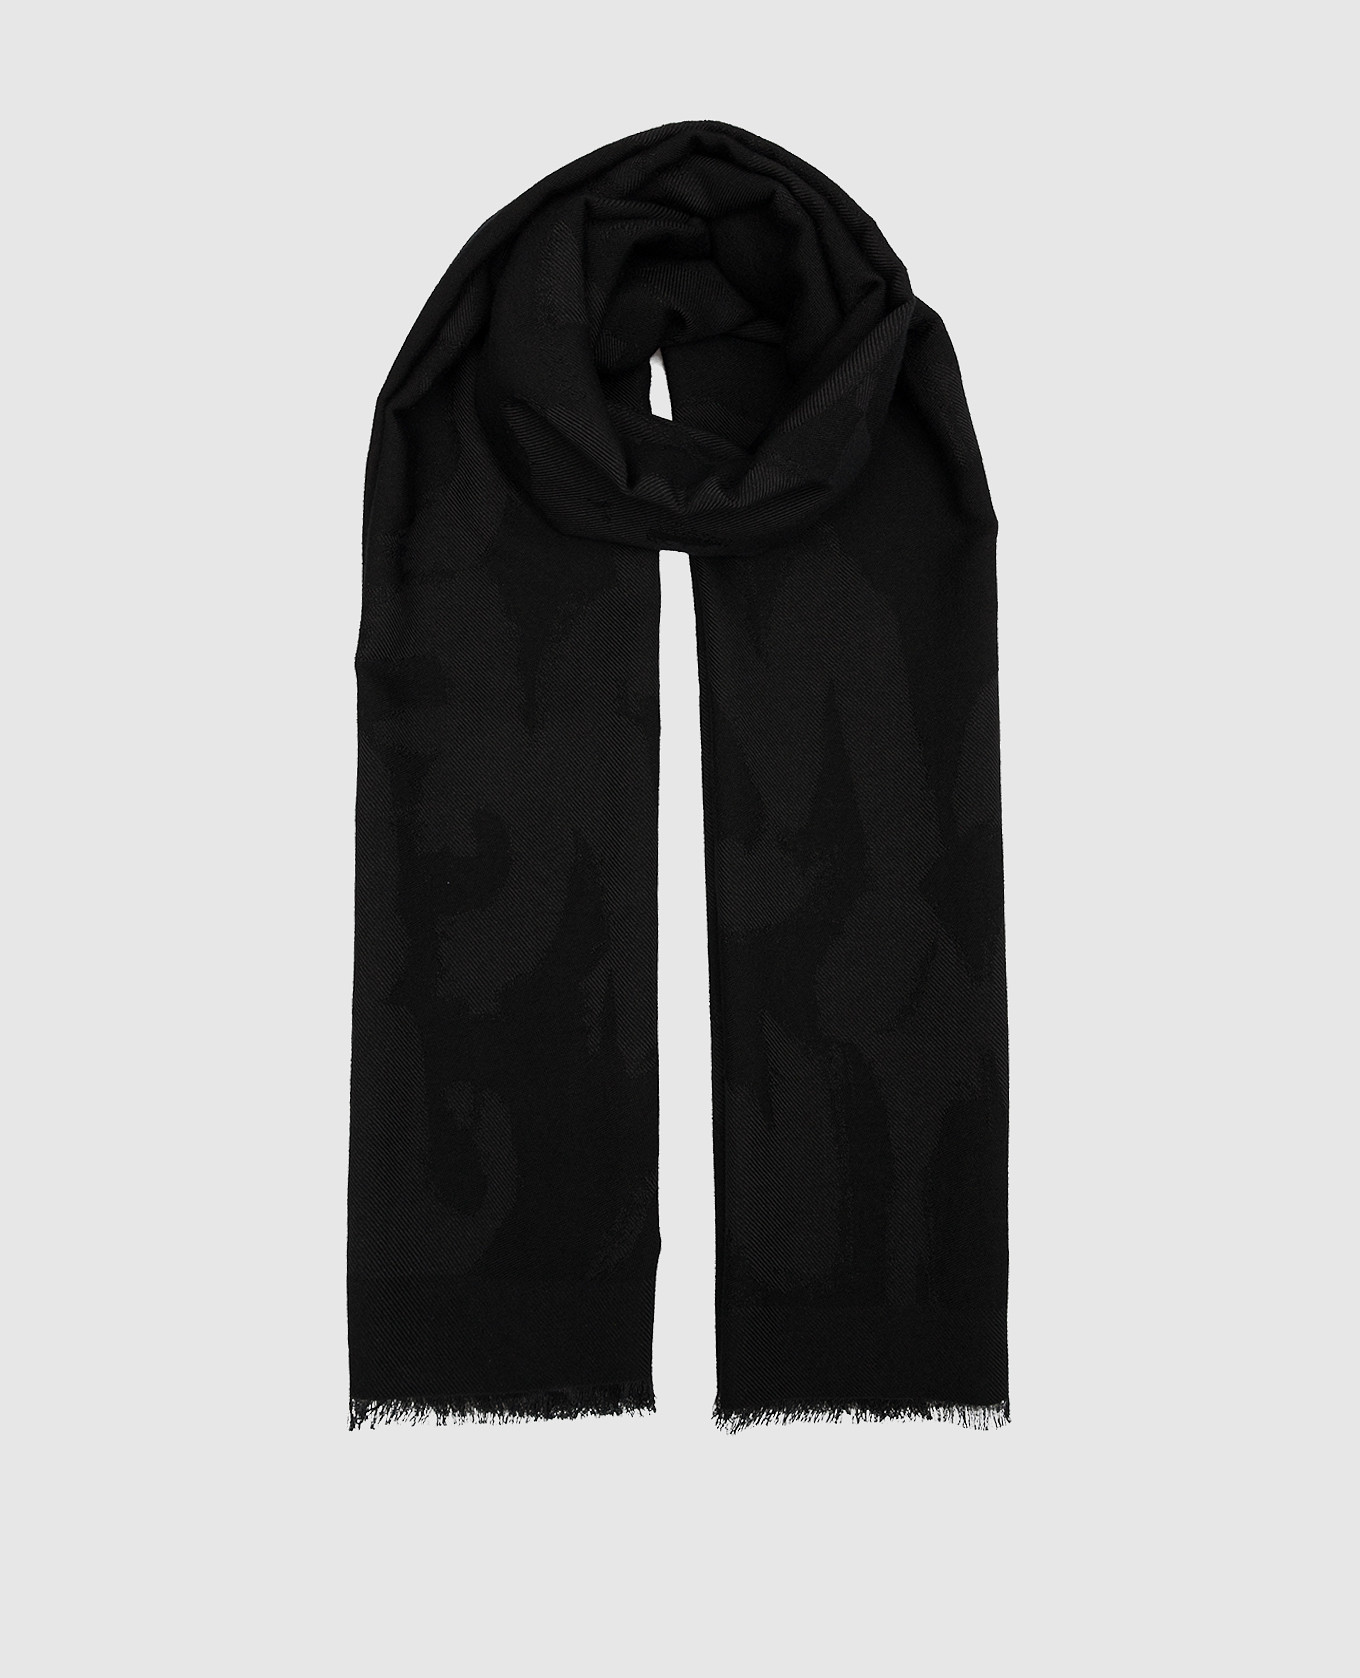 Черный шарф с шерстью и шелком в логотипе шаблон Graffiti.